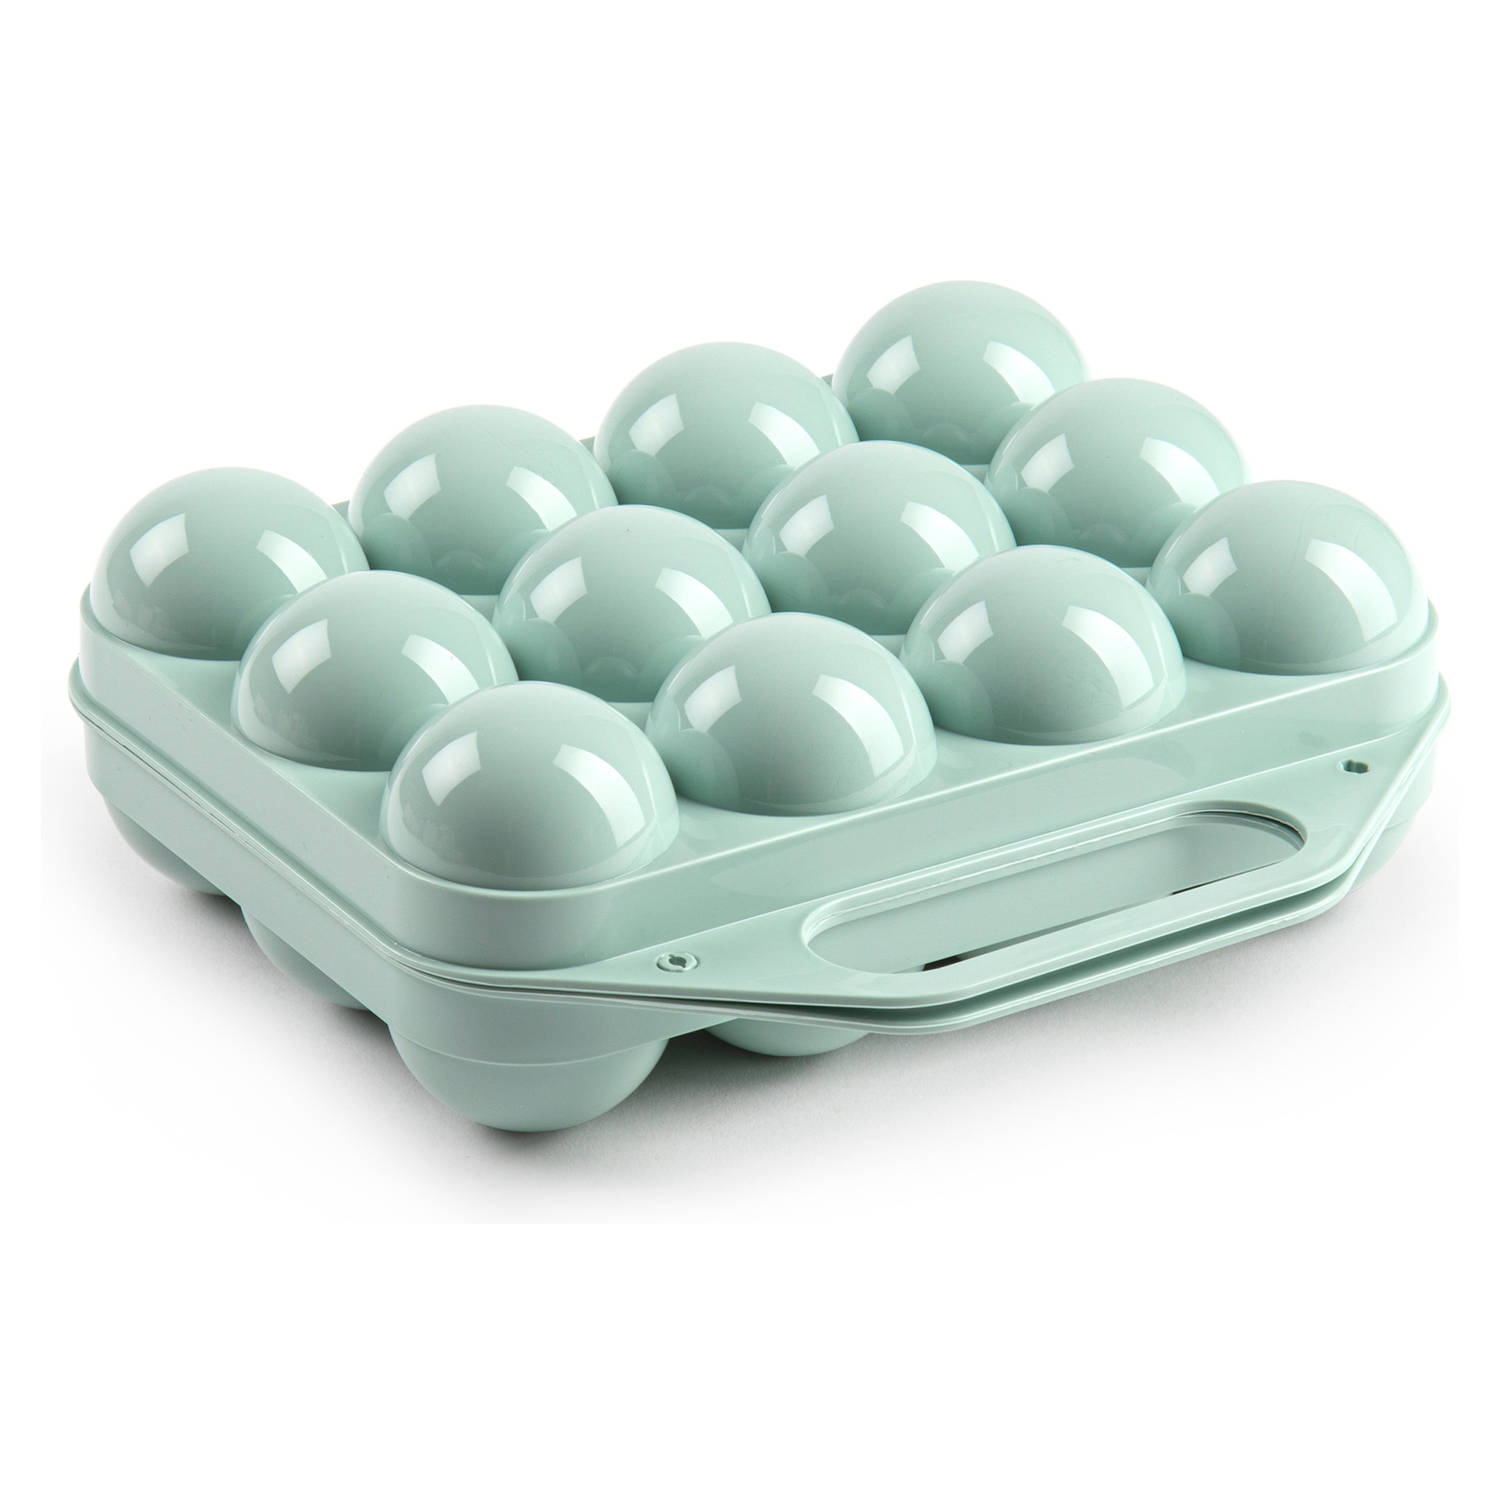 Eierdoos koelkast organizer eierhouder 12 eieren mint groen kunststof 20 x 19 cm Vershoudbakjes